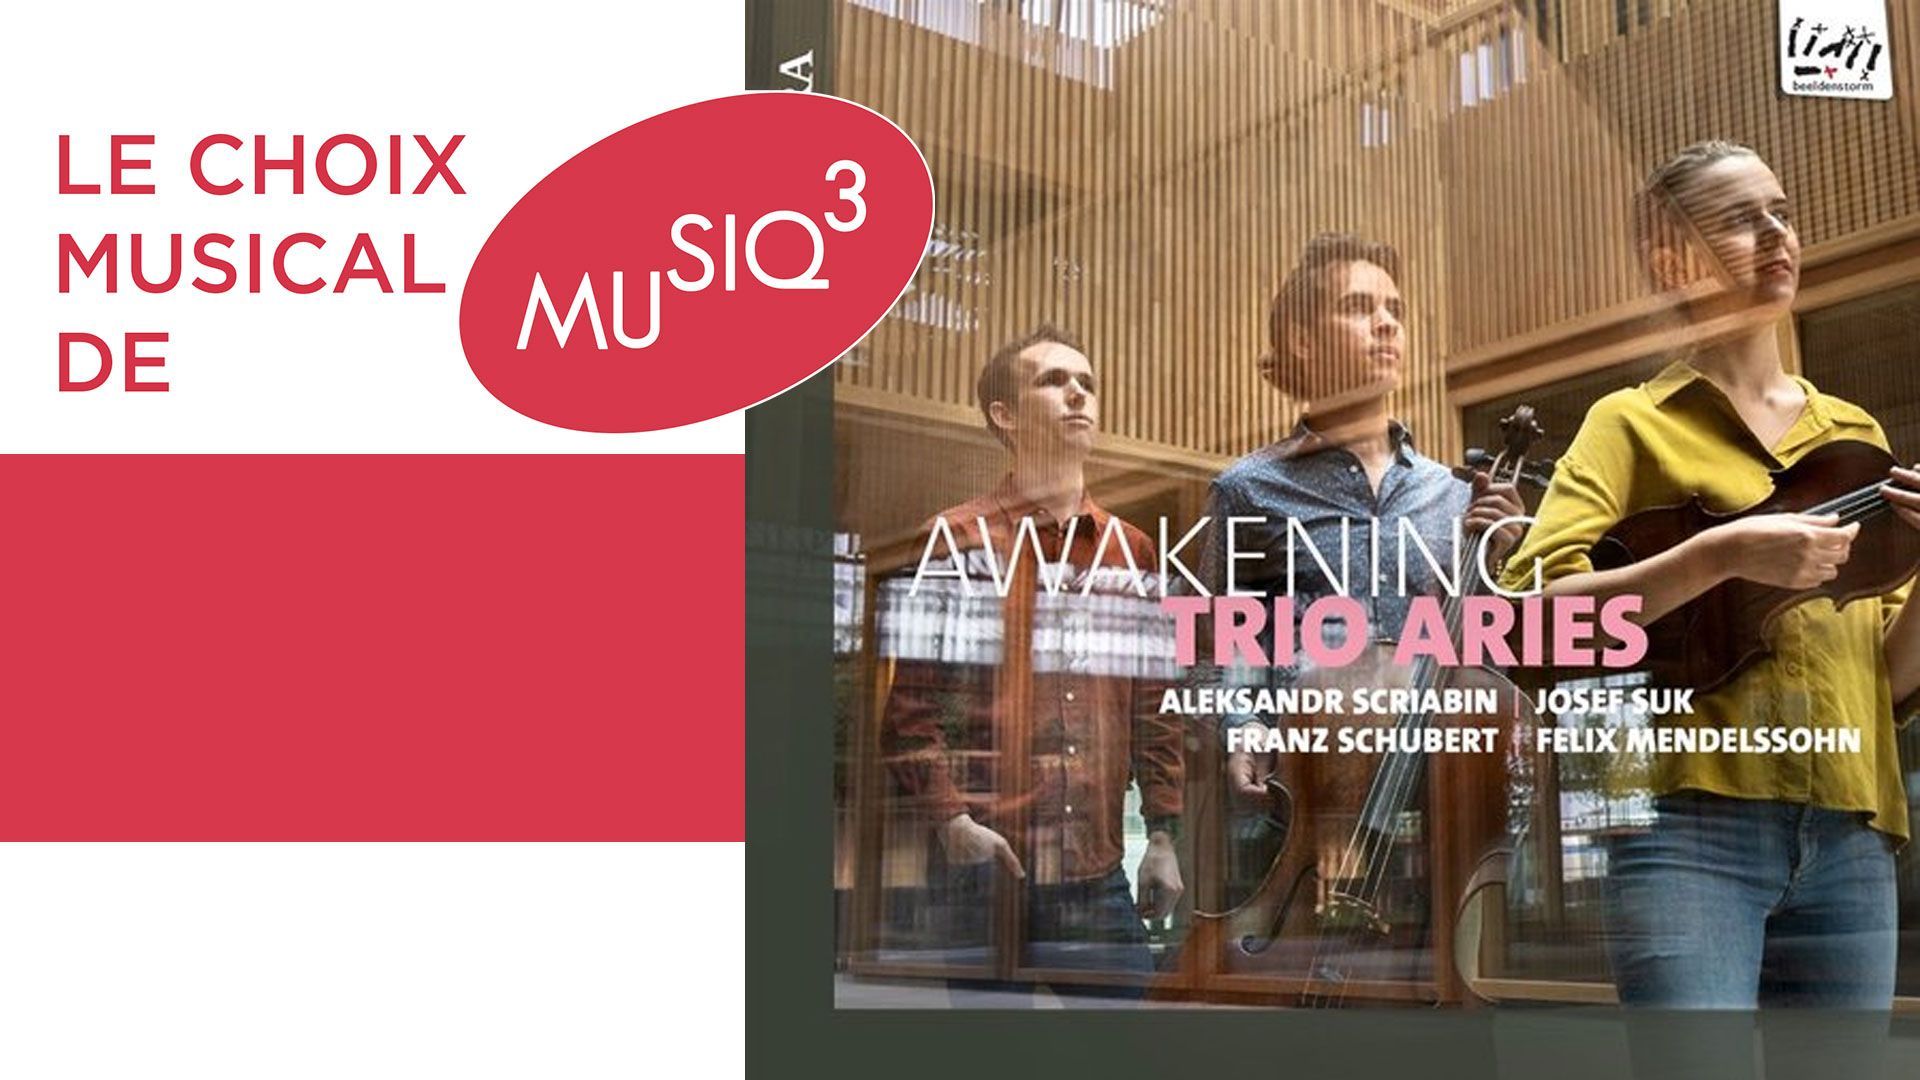 Awakening, le premier album du Trio Aries dans un programme qui parcours le centre de l’Europe au XIXe siècle